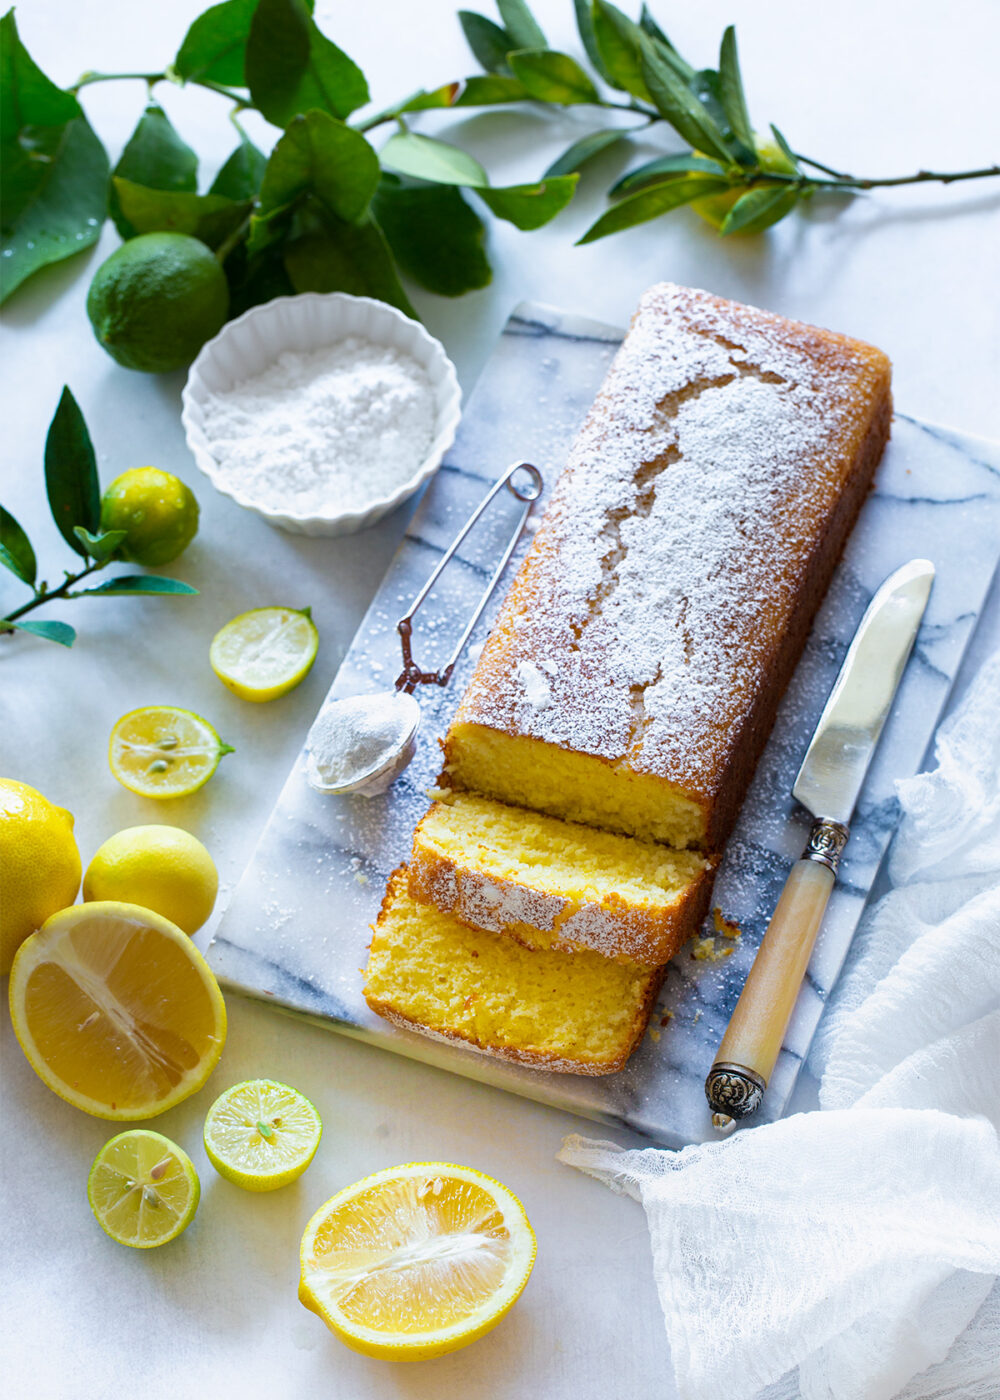 עוגת לימון בחושה פרווה מהירה וקלה להכנה